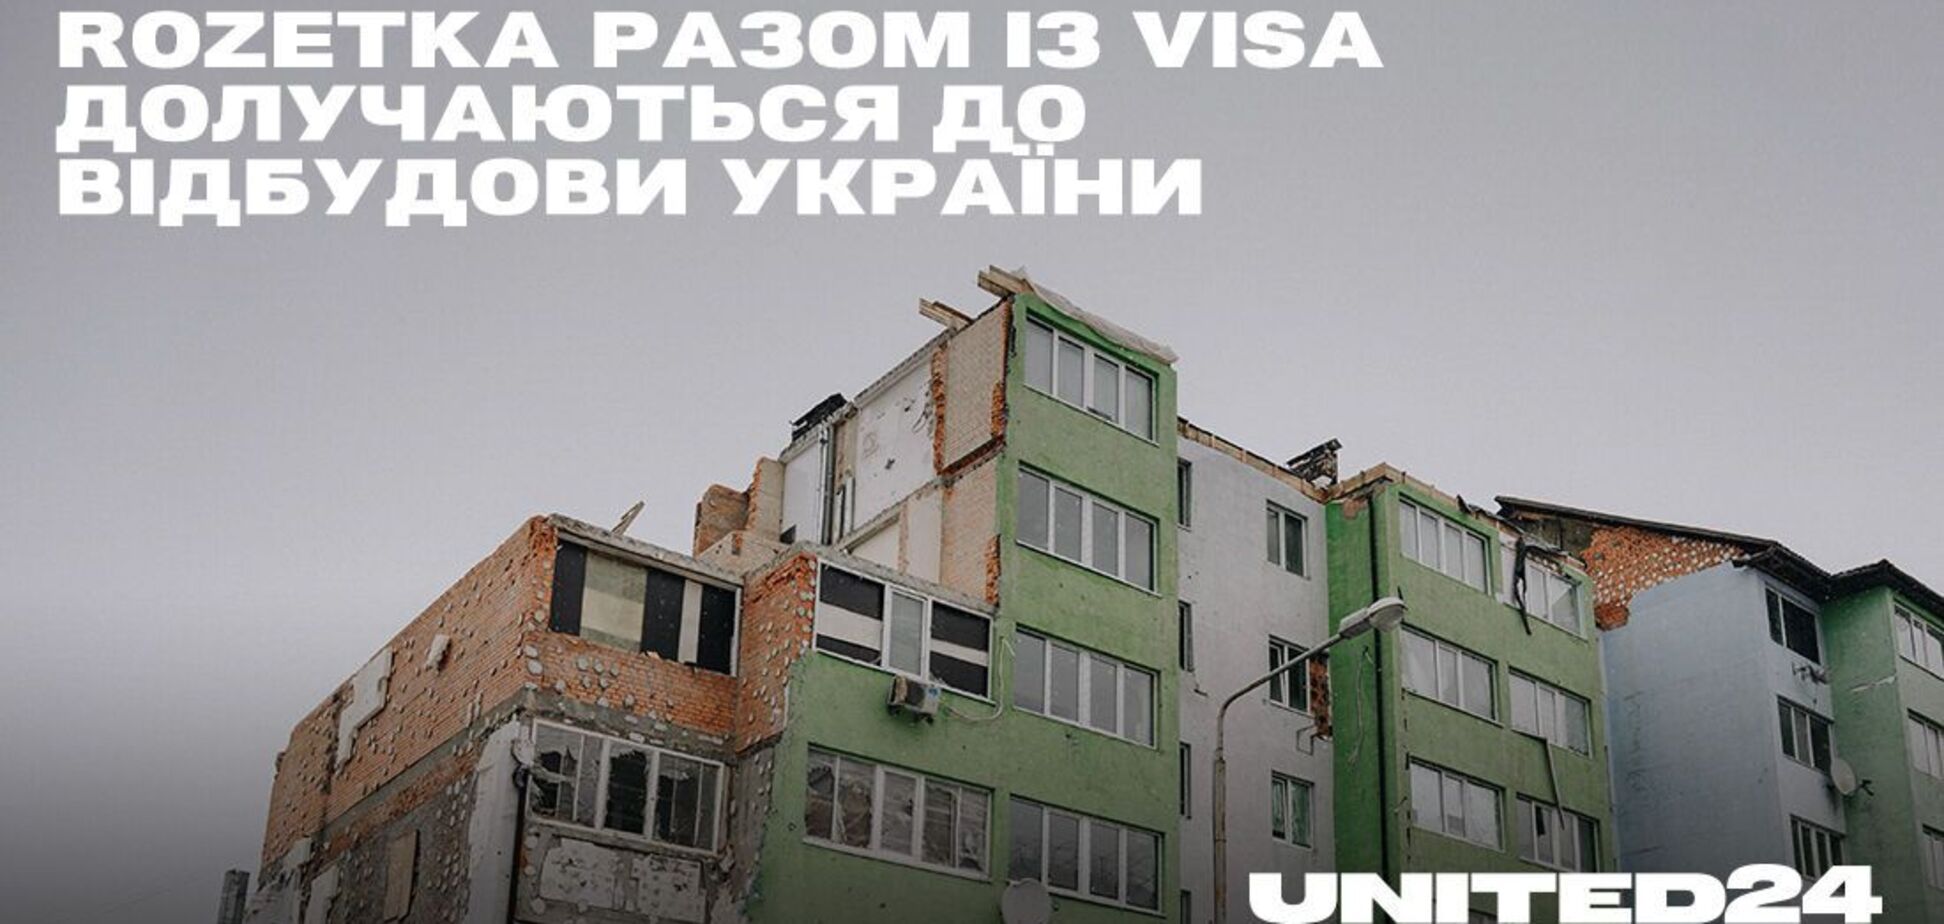 70 семей вернутся домой: ROZETKA вместе с Visa присоединяются к восстановлению Украины